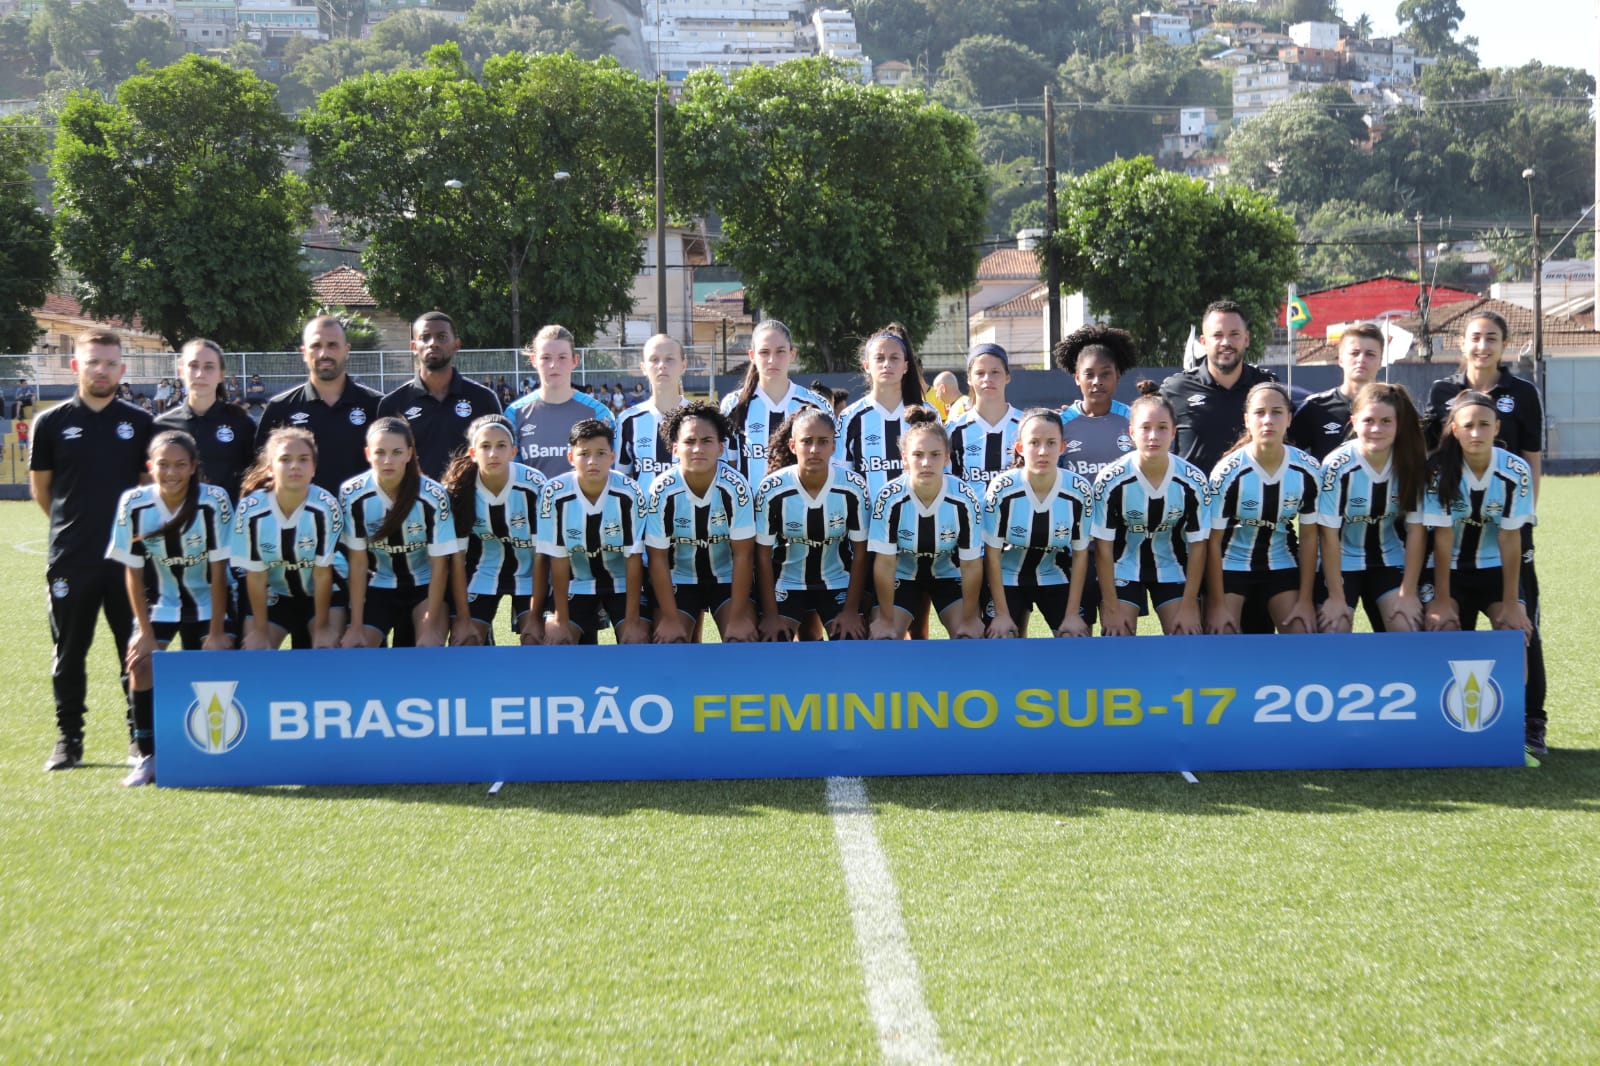 FINAL DO BRASILEIRÃO FEMININO 2022 - FINALISTAS DO CAMPEONATO